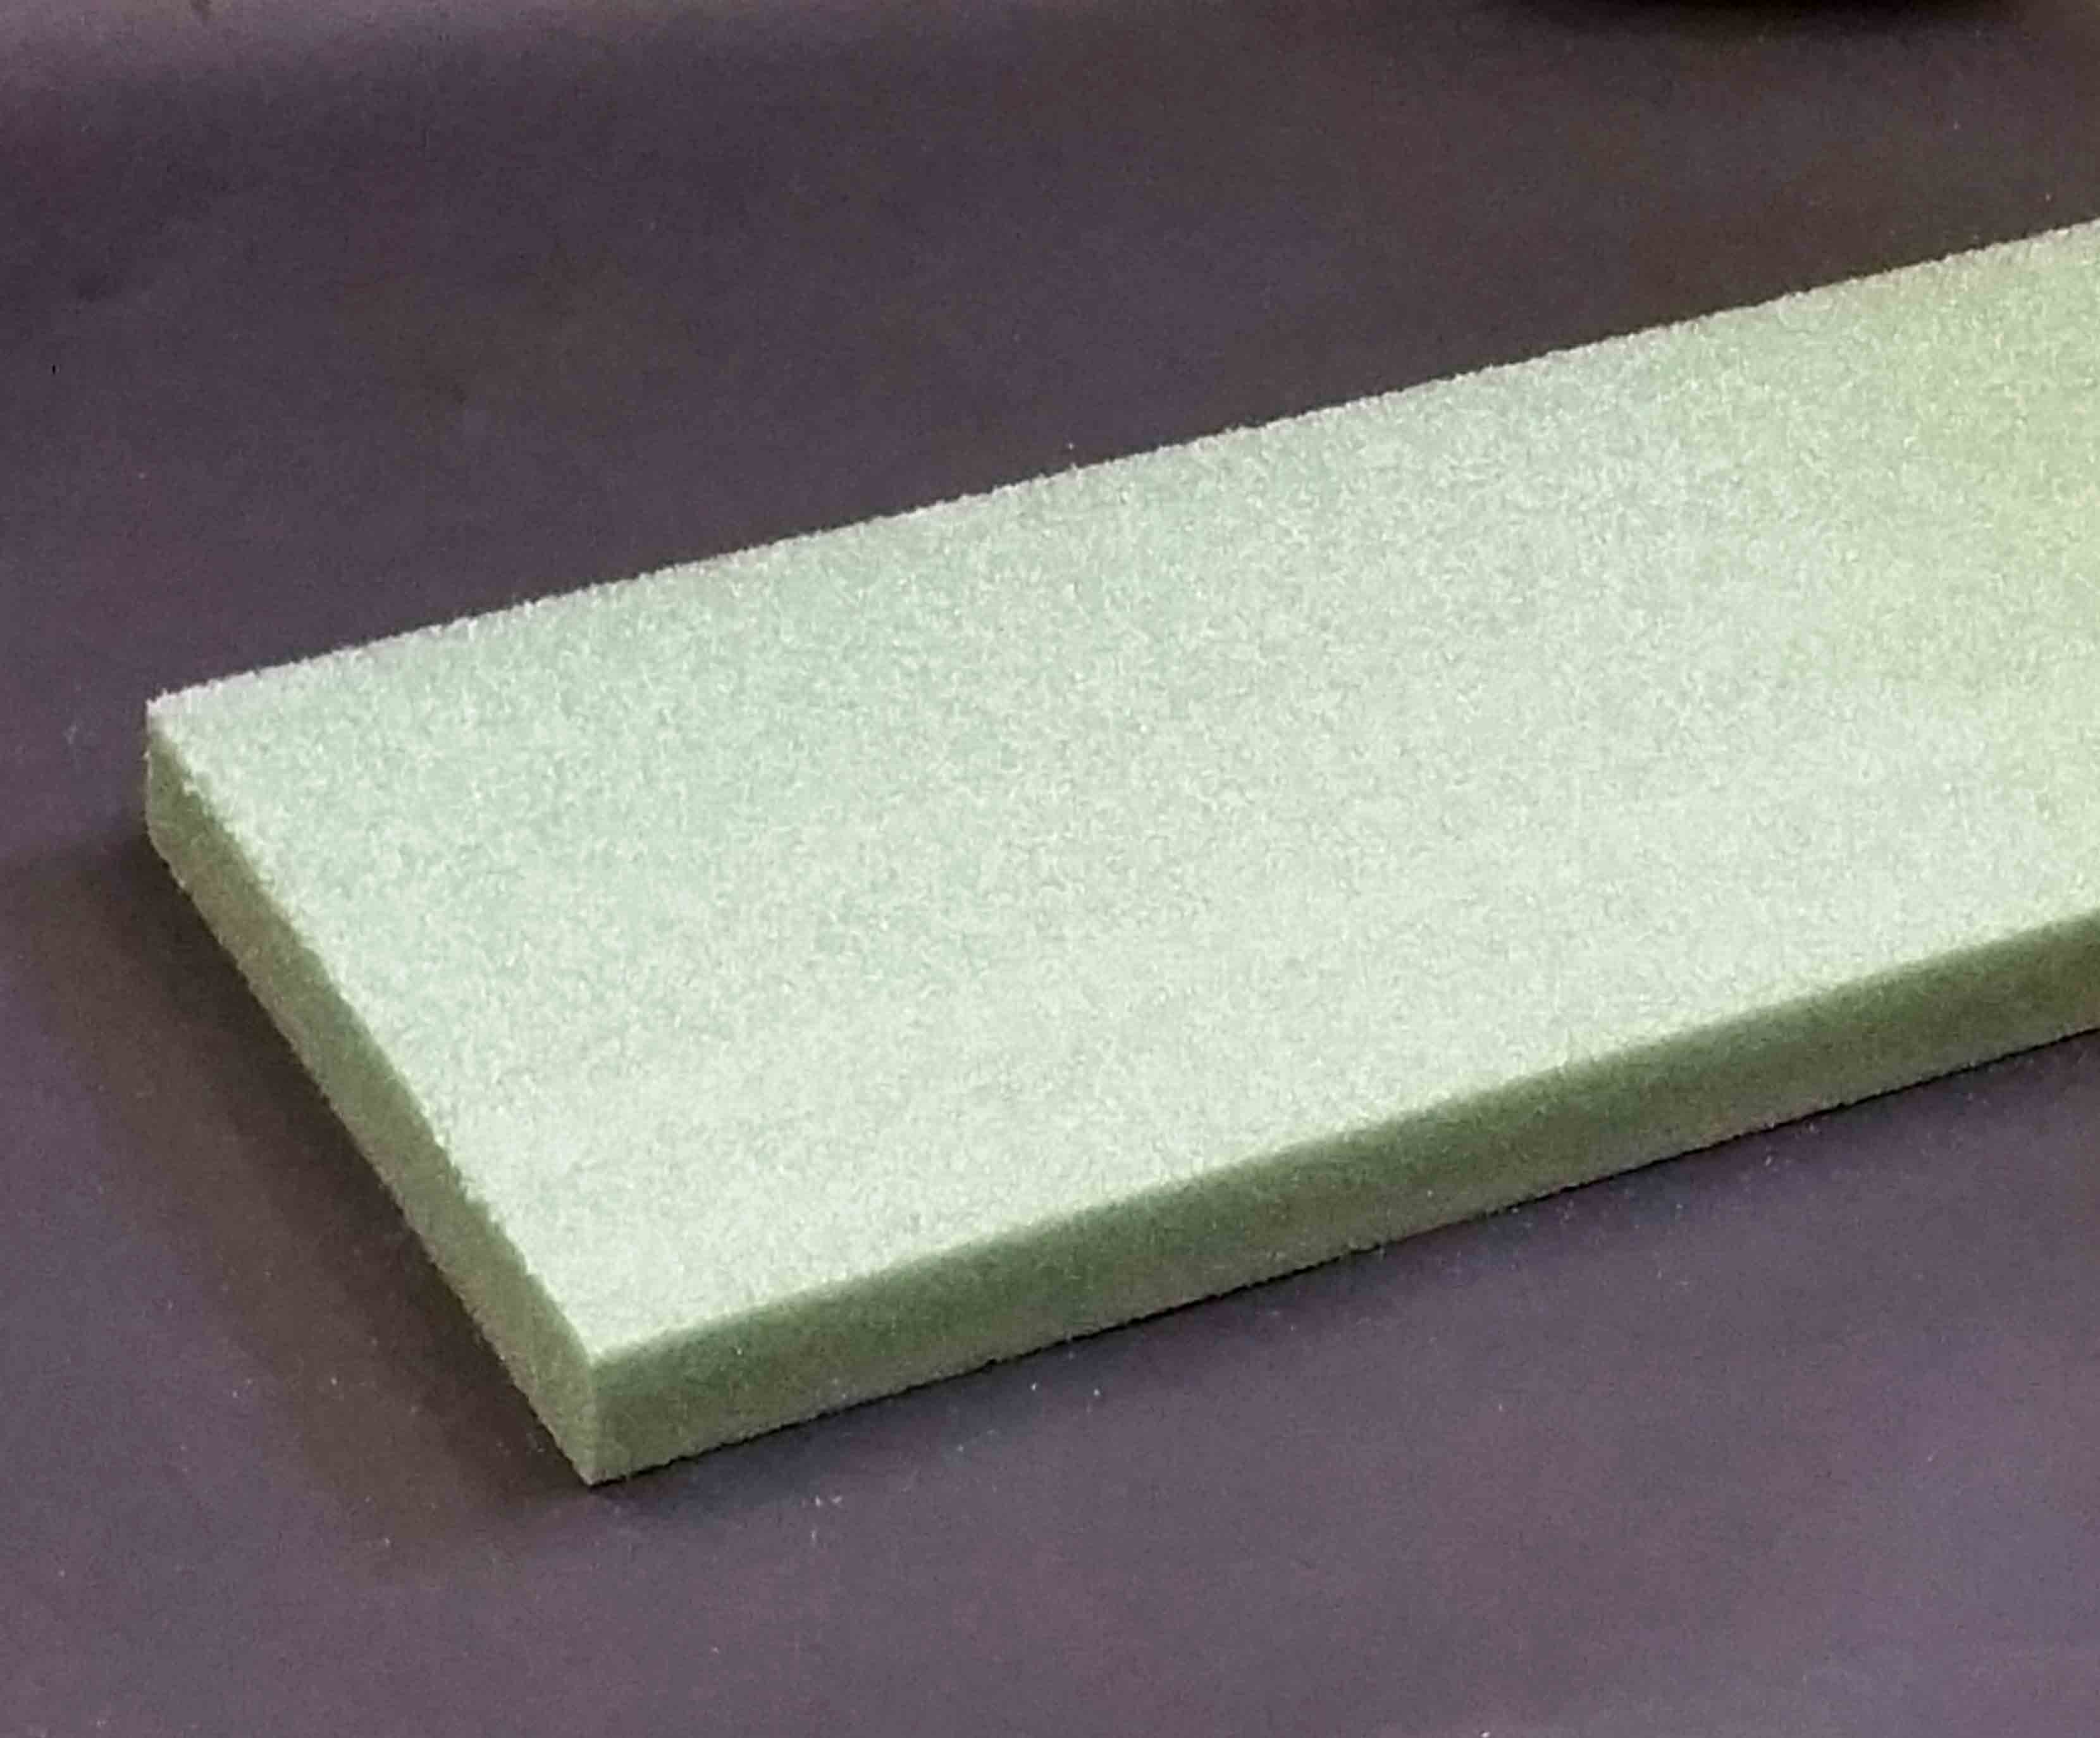 657 - 2" Green  Styrofoam Boards - 15.65 ea, 15.40/20